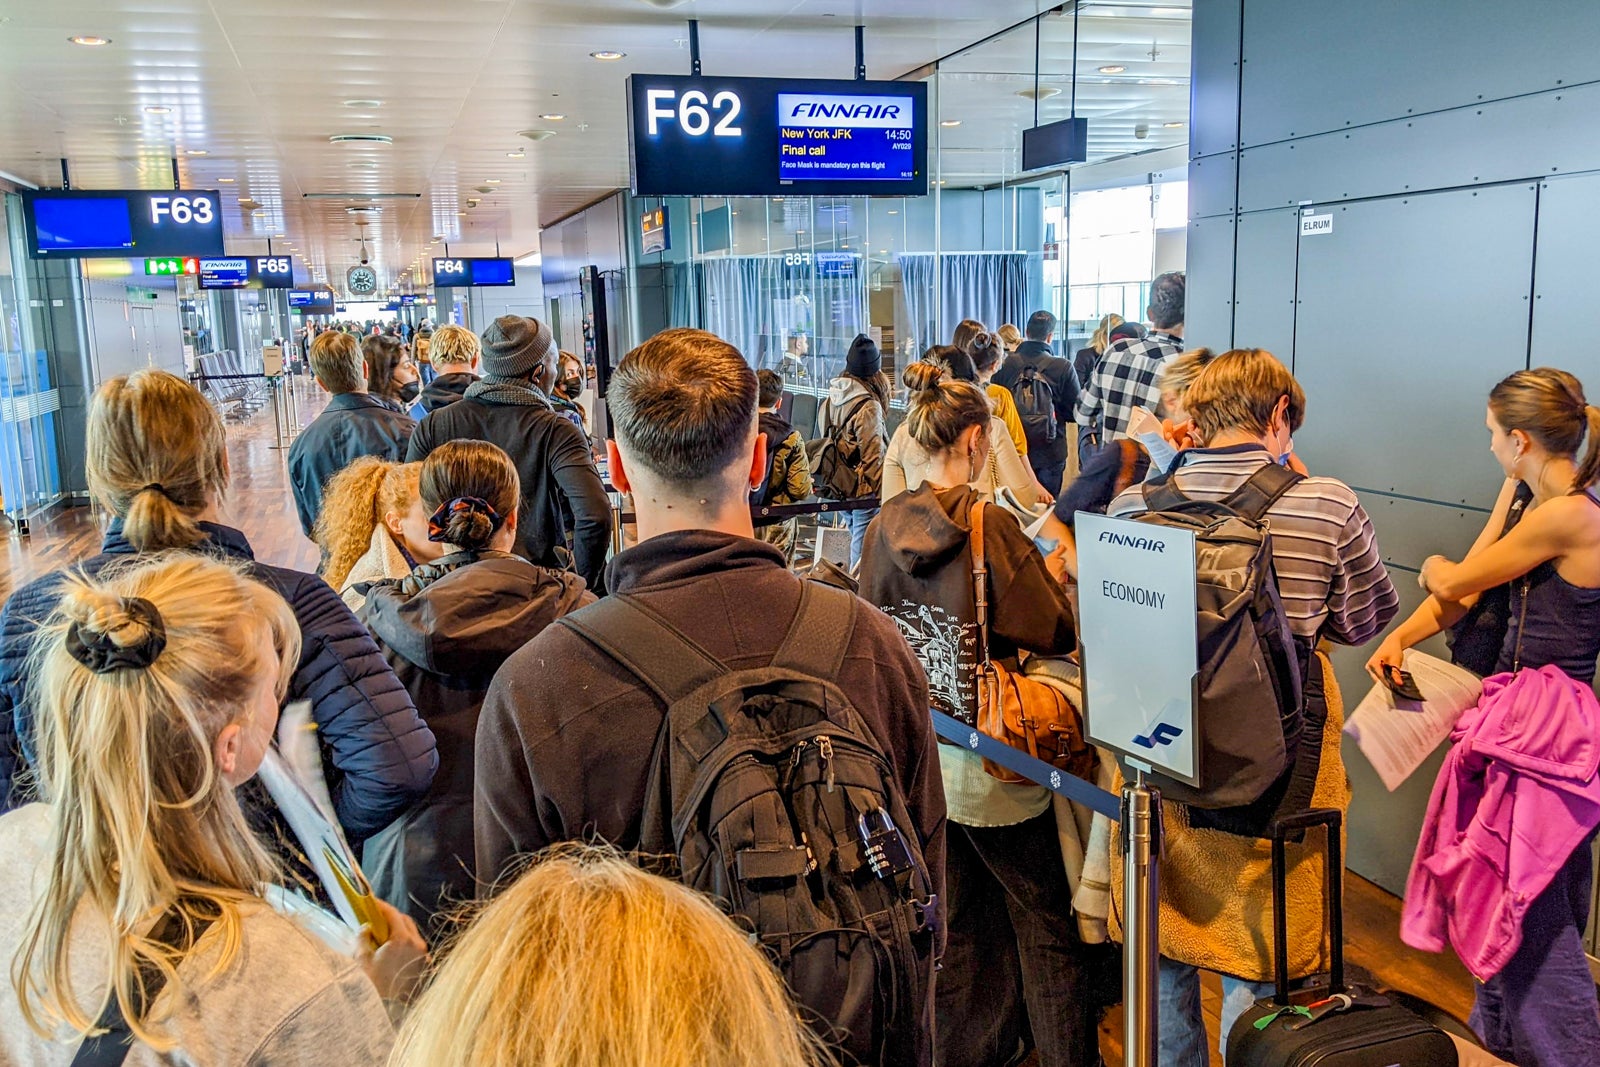 Boarding Finnair flight in Stockholm